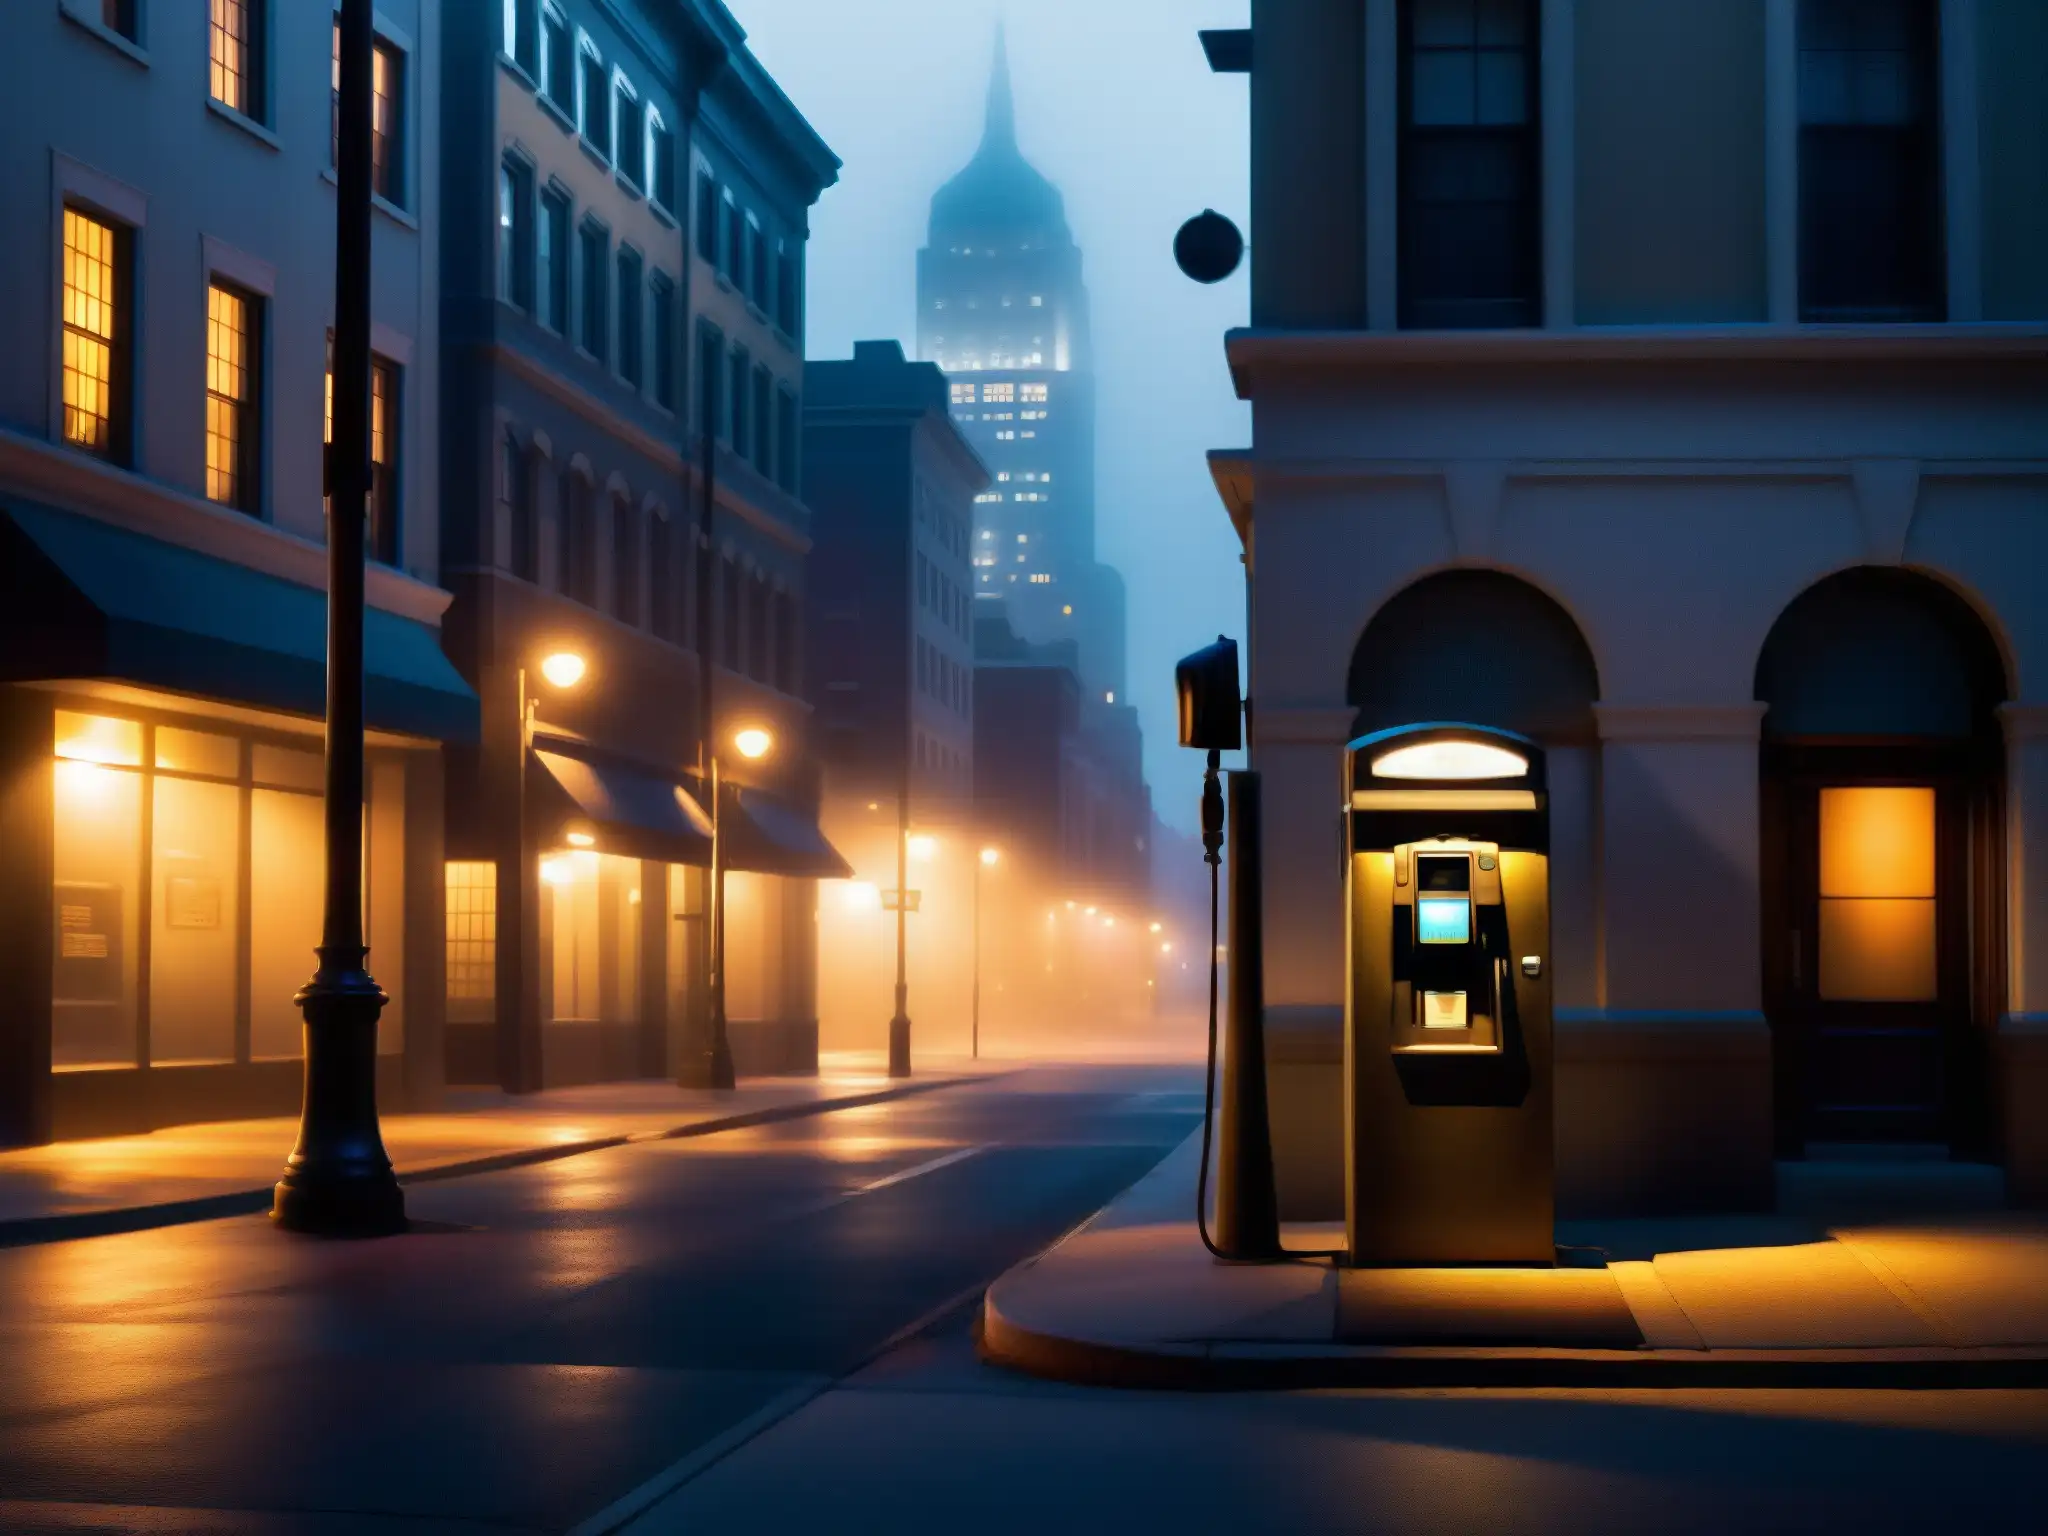 Una calle urbana tenue iluminada de noche con un teléfono público solitario bajo una farola parpadeante